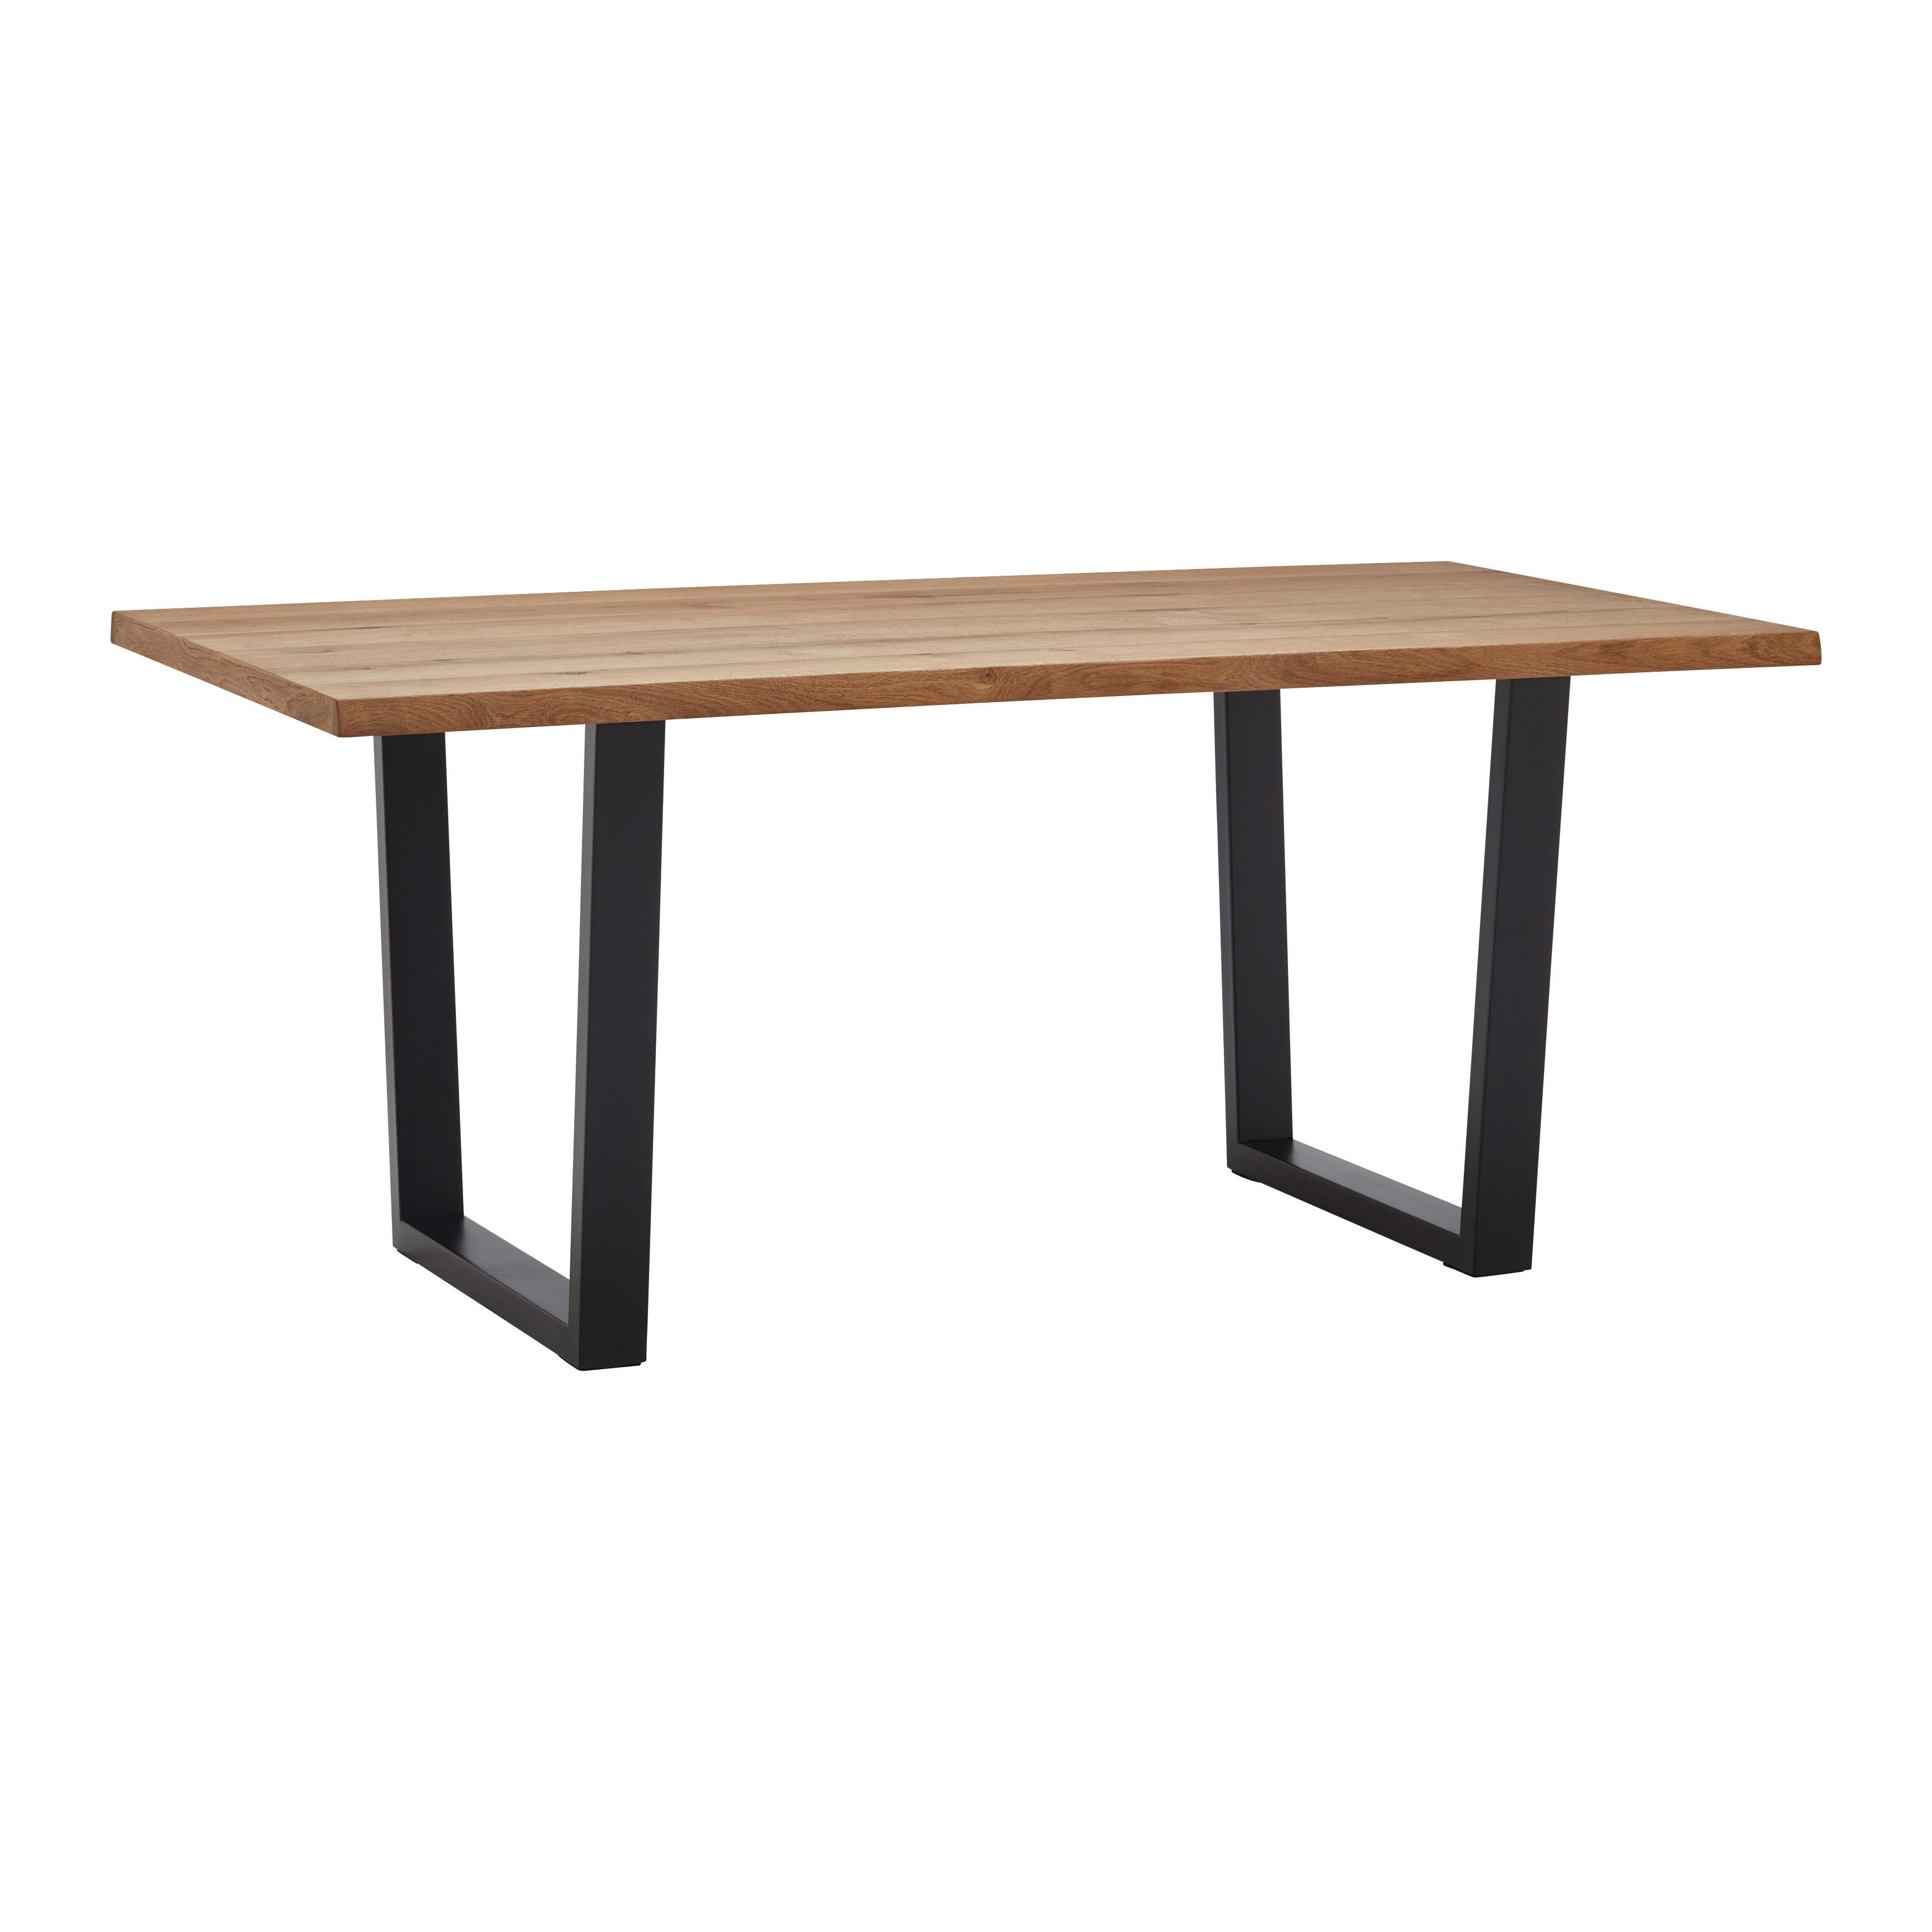 Jídelní Stůl Juno 180x90 Cm - černá/barvy dubu, Moderní, kov/dřevo (180/90/76cm) - Bessagi Home